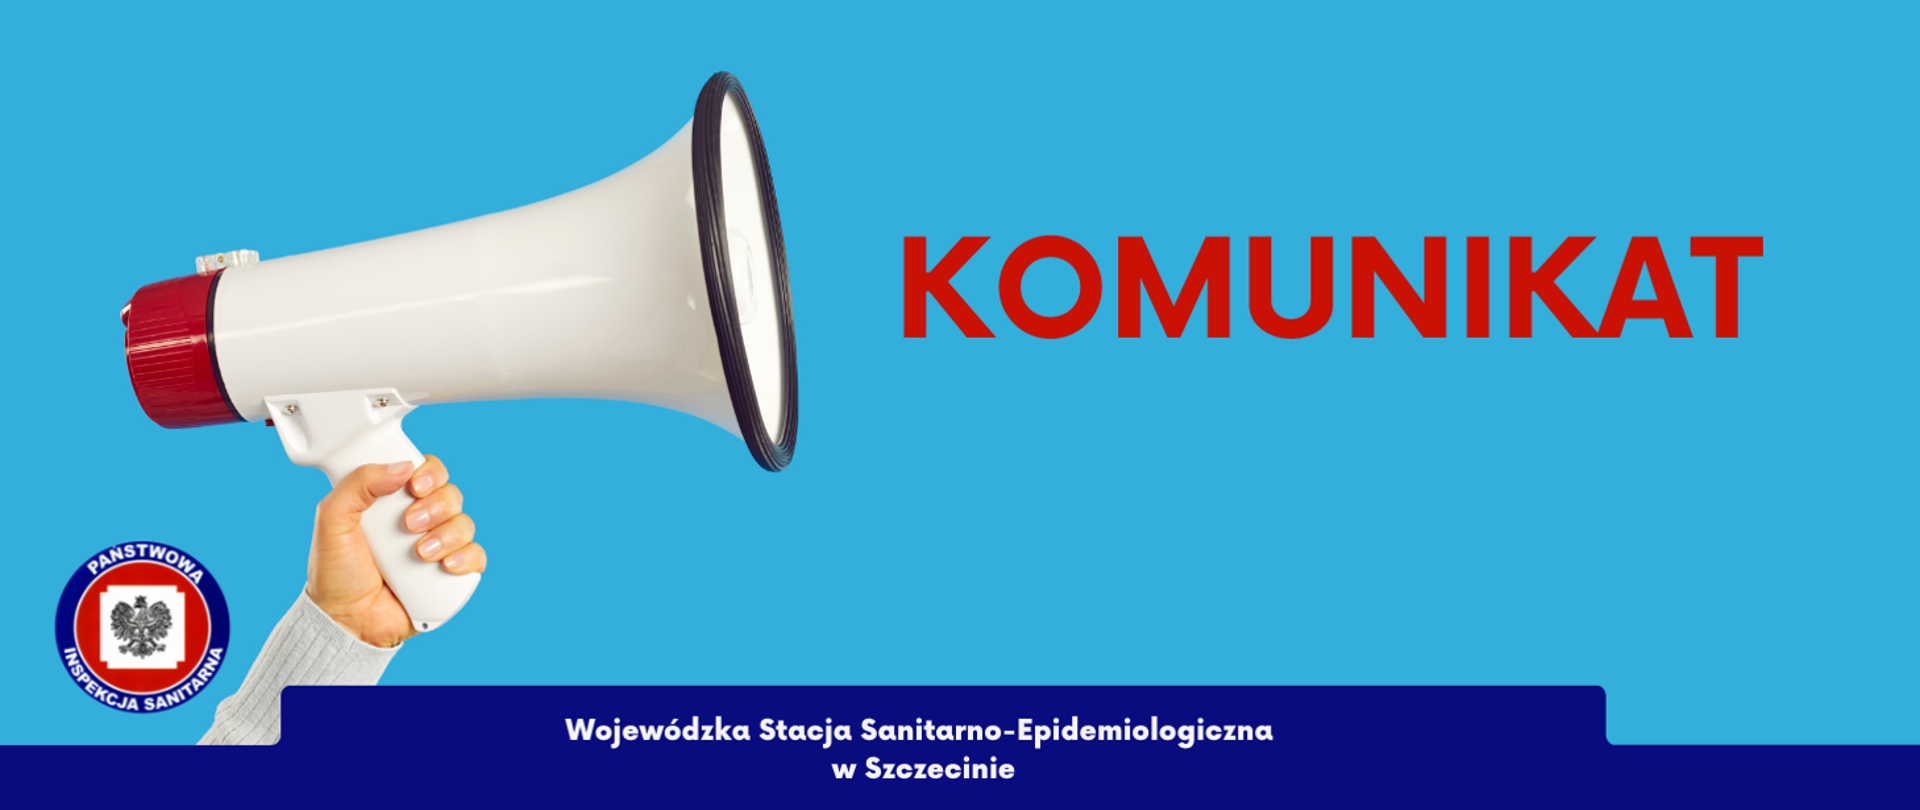 Na grafice po lewej stronie znajduje się dłoń trzymająca megafon. Obok niej widoczne jest logo Państwowej Inspekcji Sanitarnej. Po prawej widnieje napis KOMUNIKAT. Poniżej jest napisane Wojewódzka Stacja Sanitarno - Epidemiologiczna w Szczecinie. 